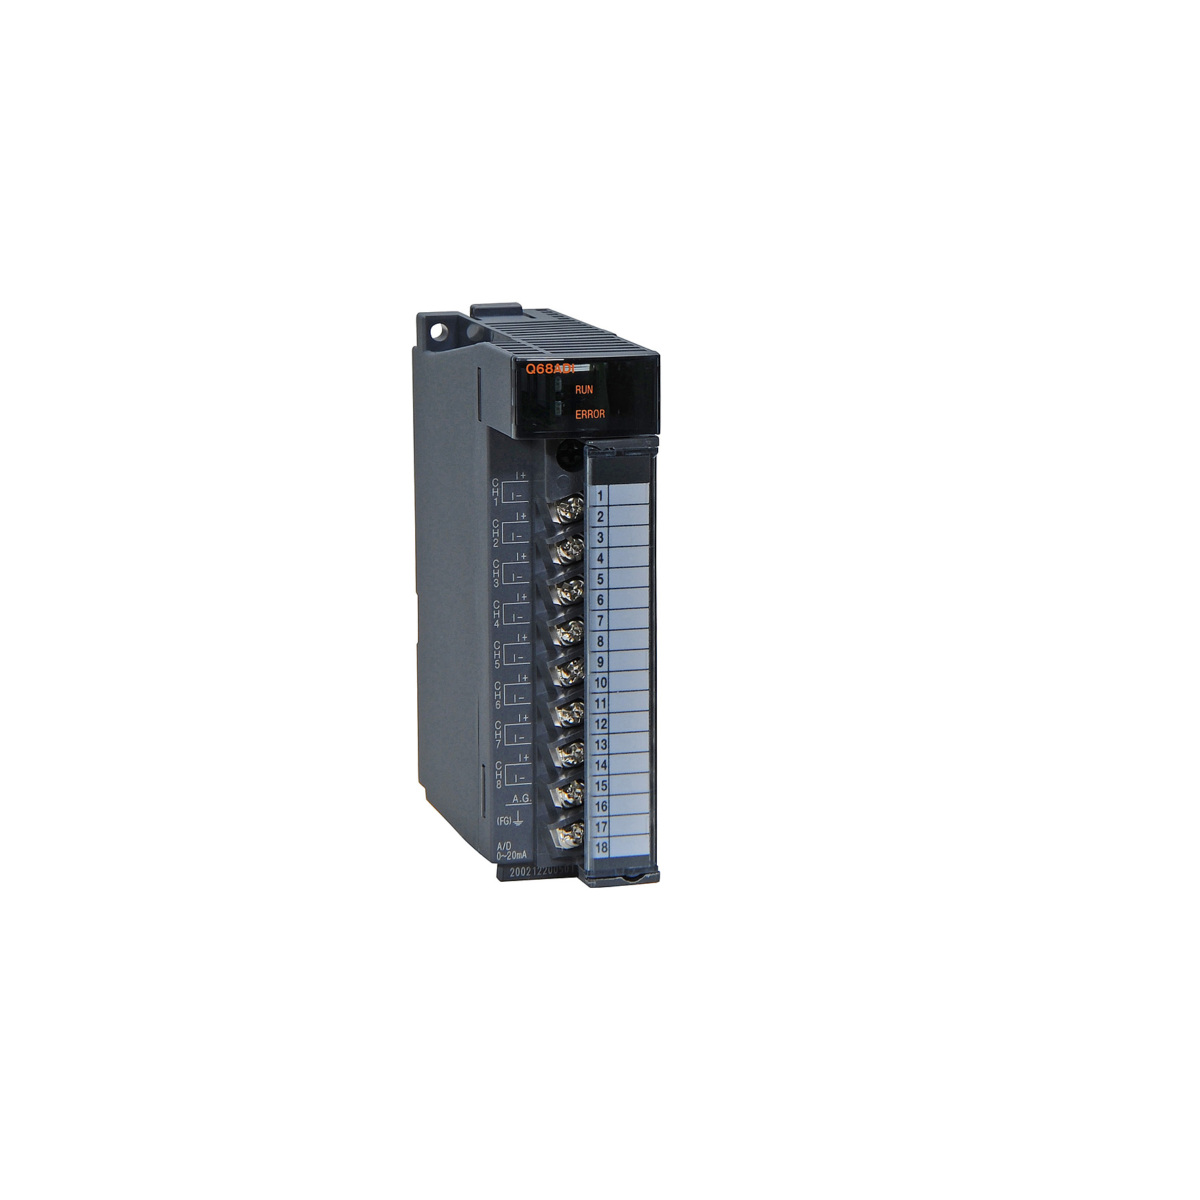 三菱 シーケンサー Q68ADI PLC アナログ－デジタル変換ユニット Q68ADI